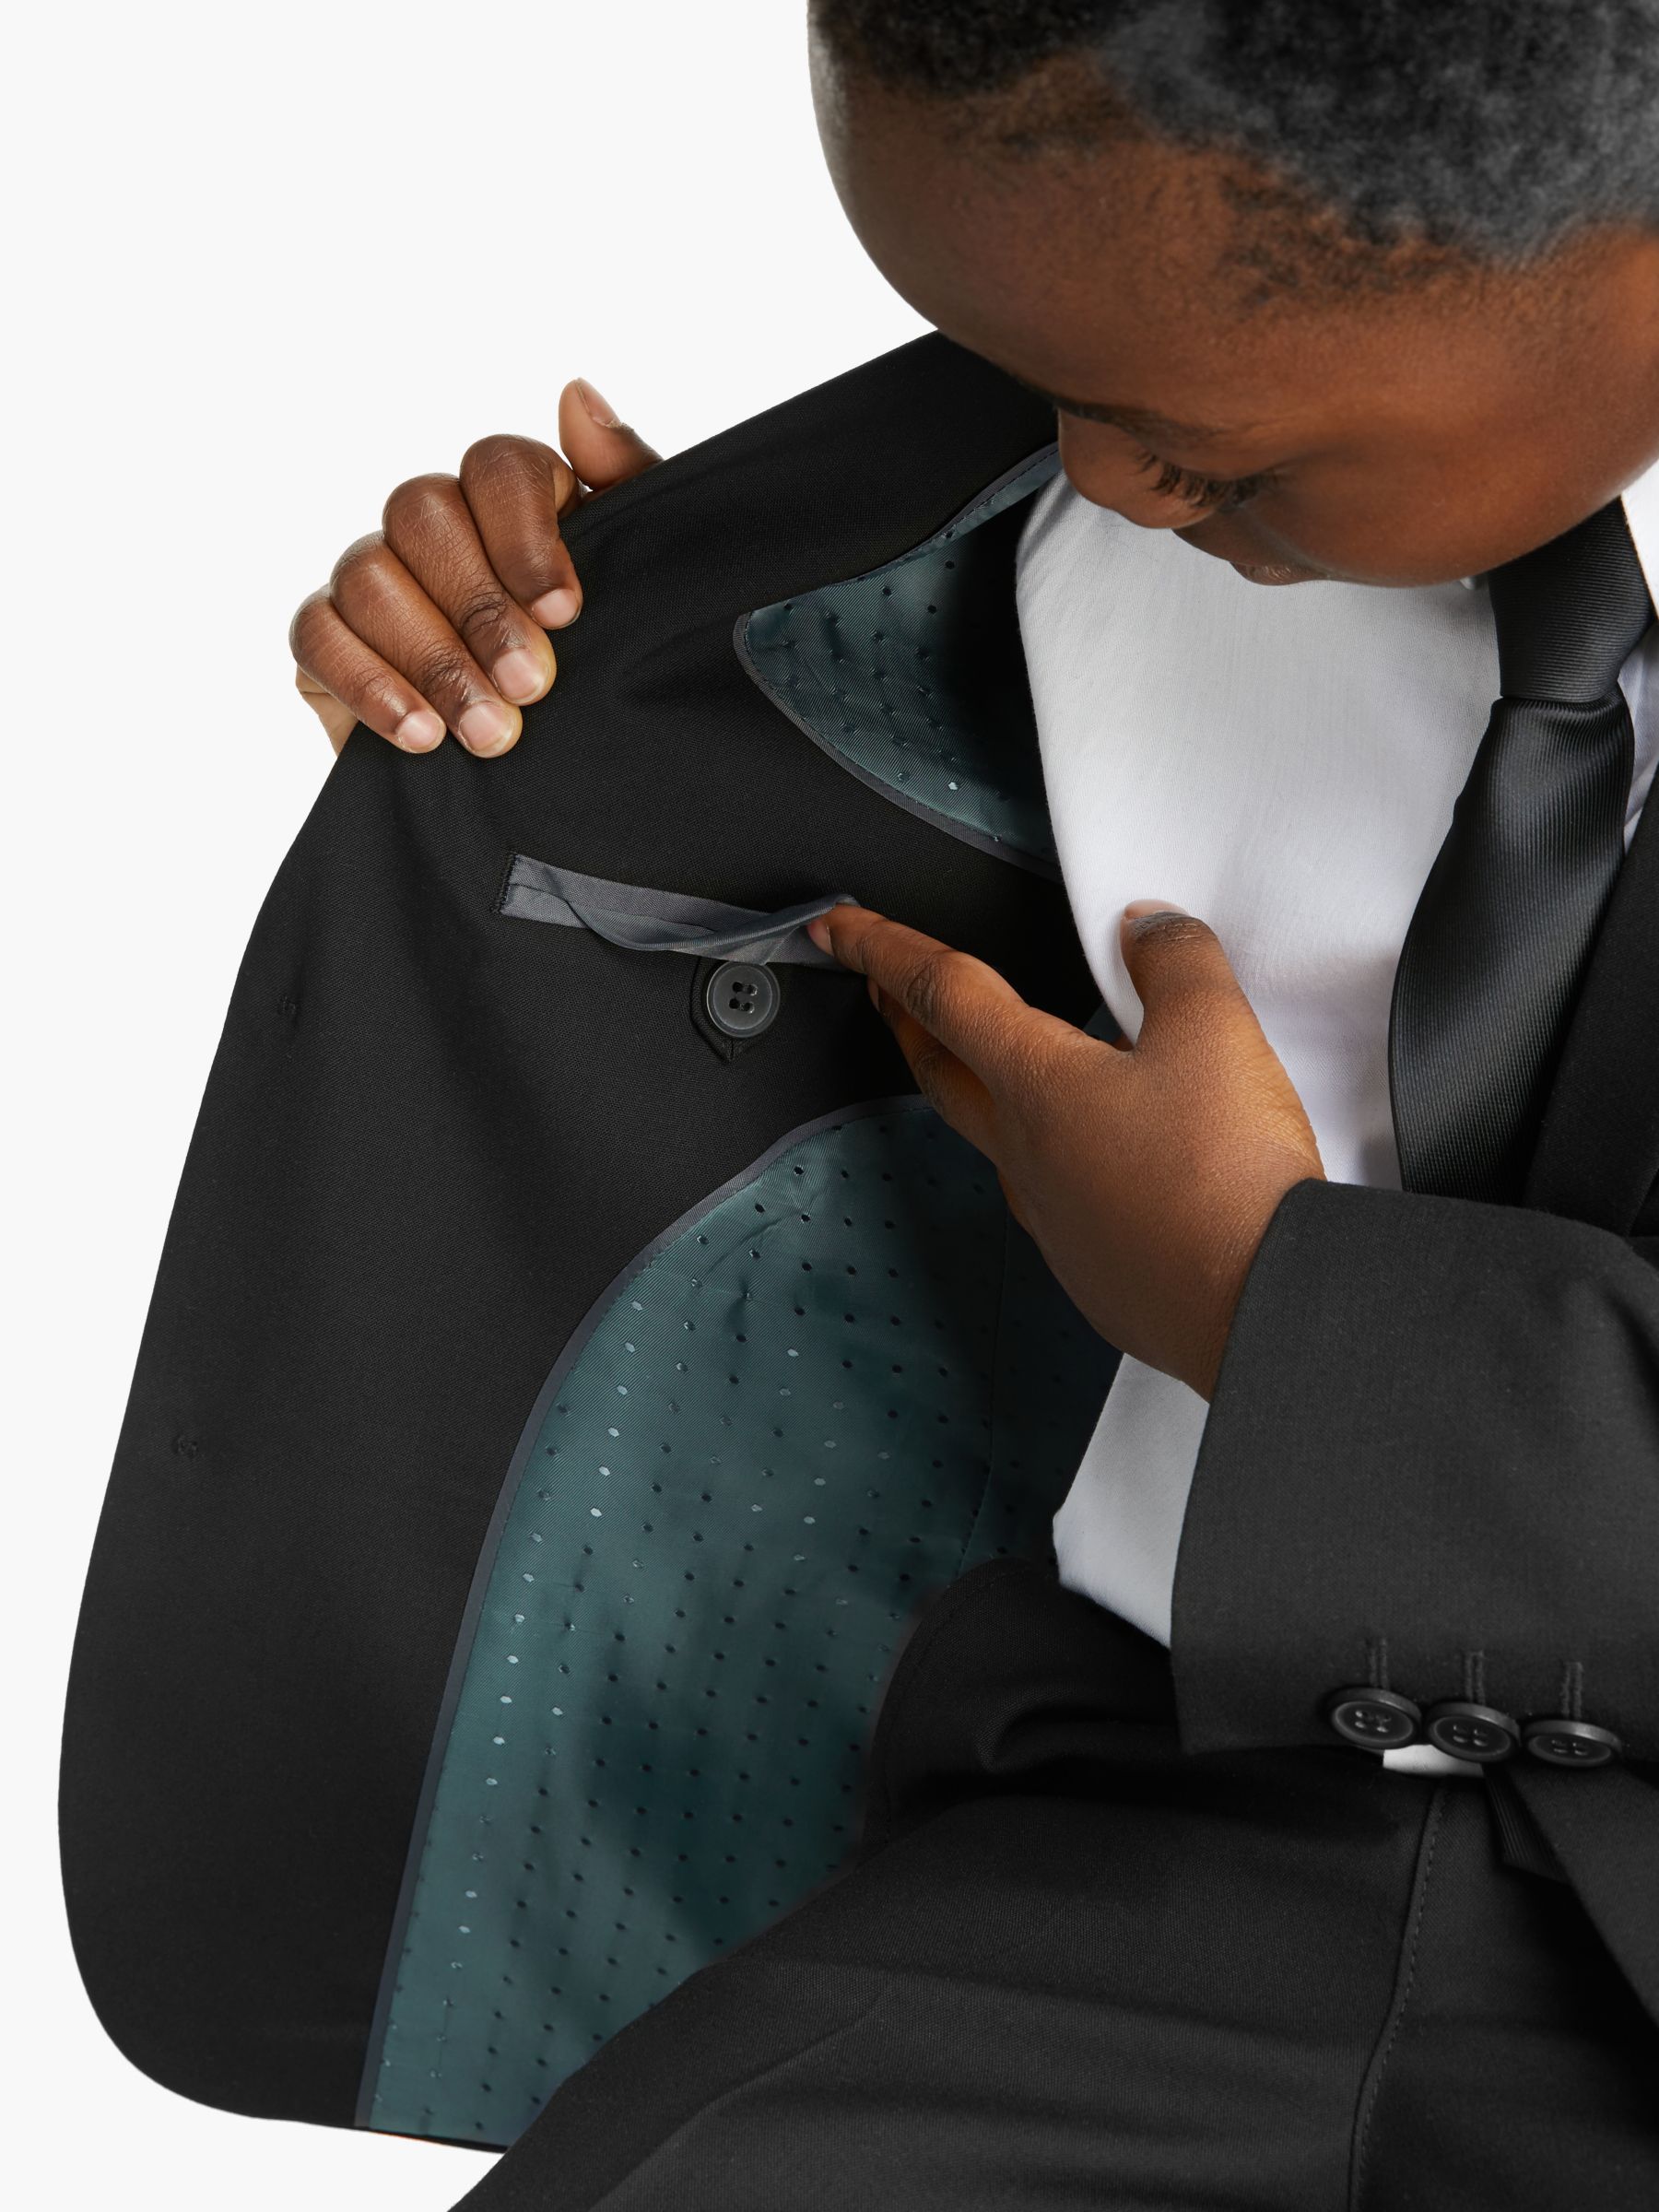 Buy John Lewis Heirloom Collection Kids' Black Suit Jacket, Black Online at johnlewis.com